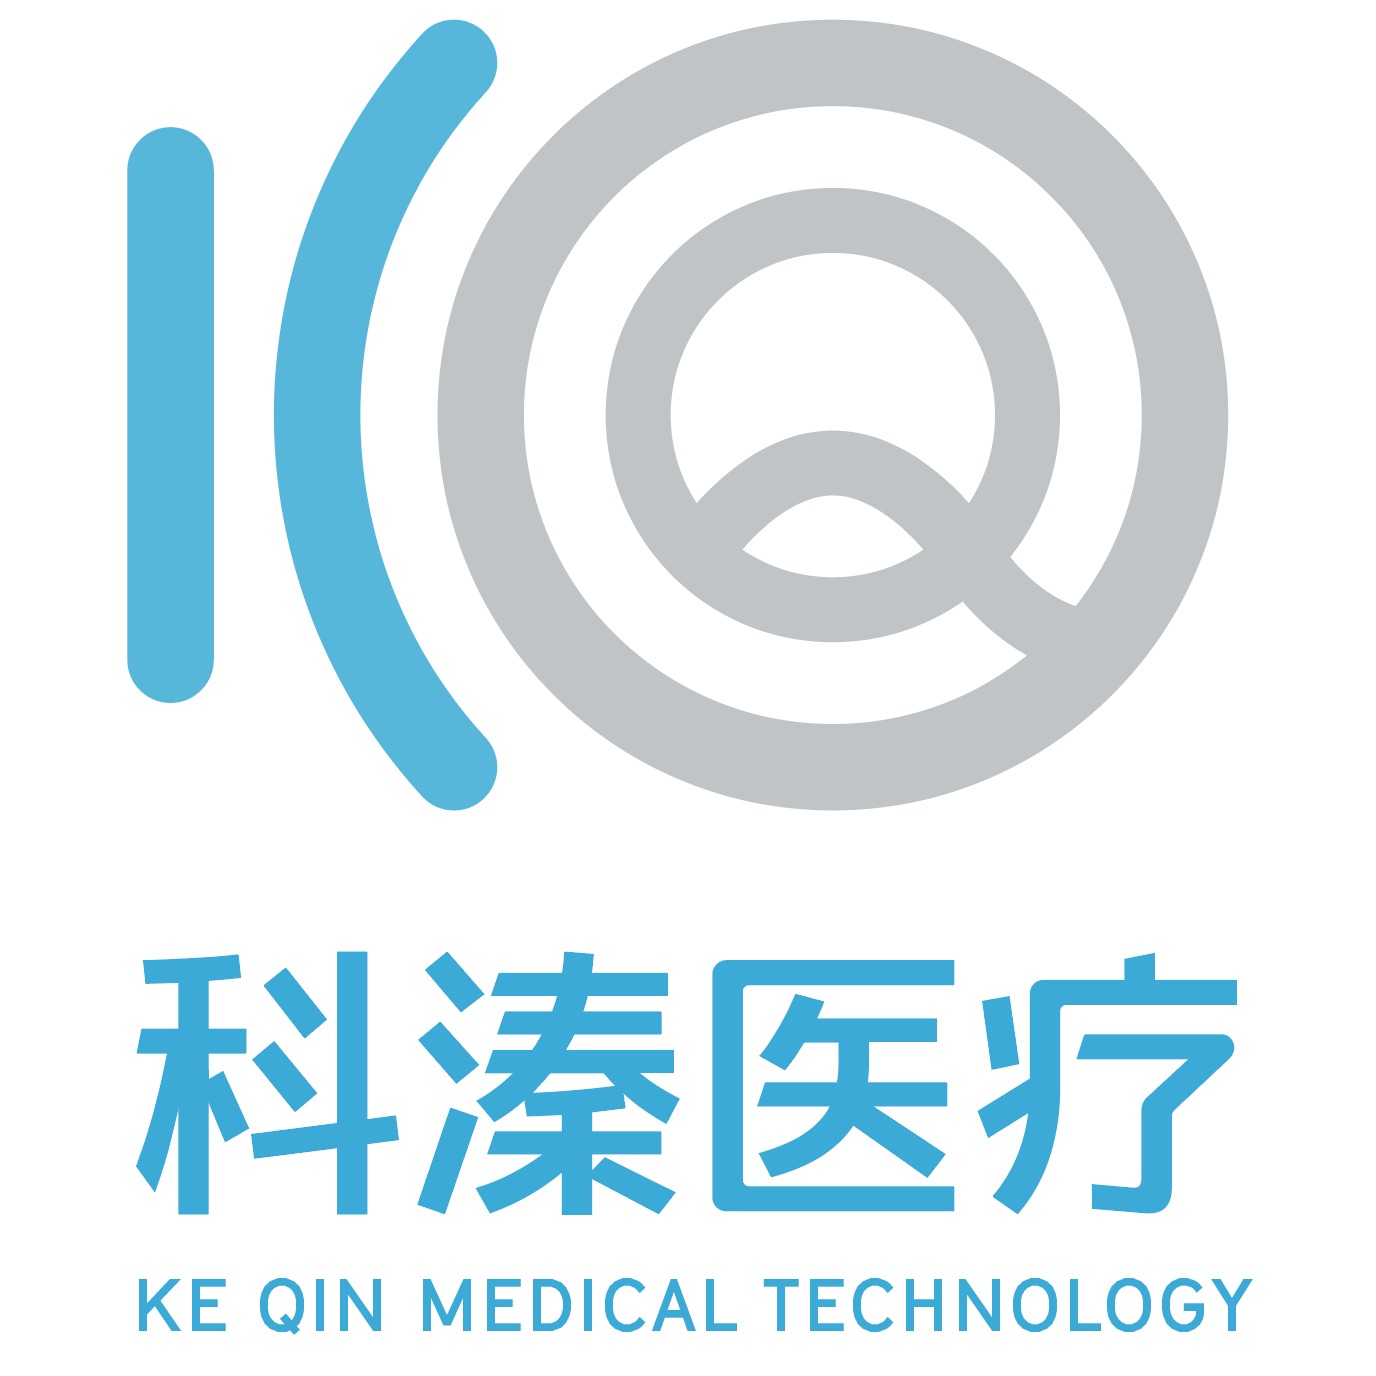 上海科溱医疗科技有限公司